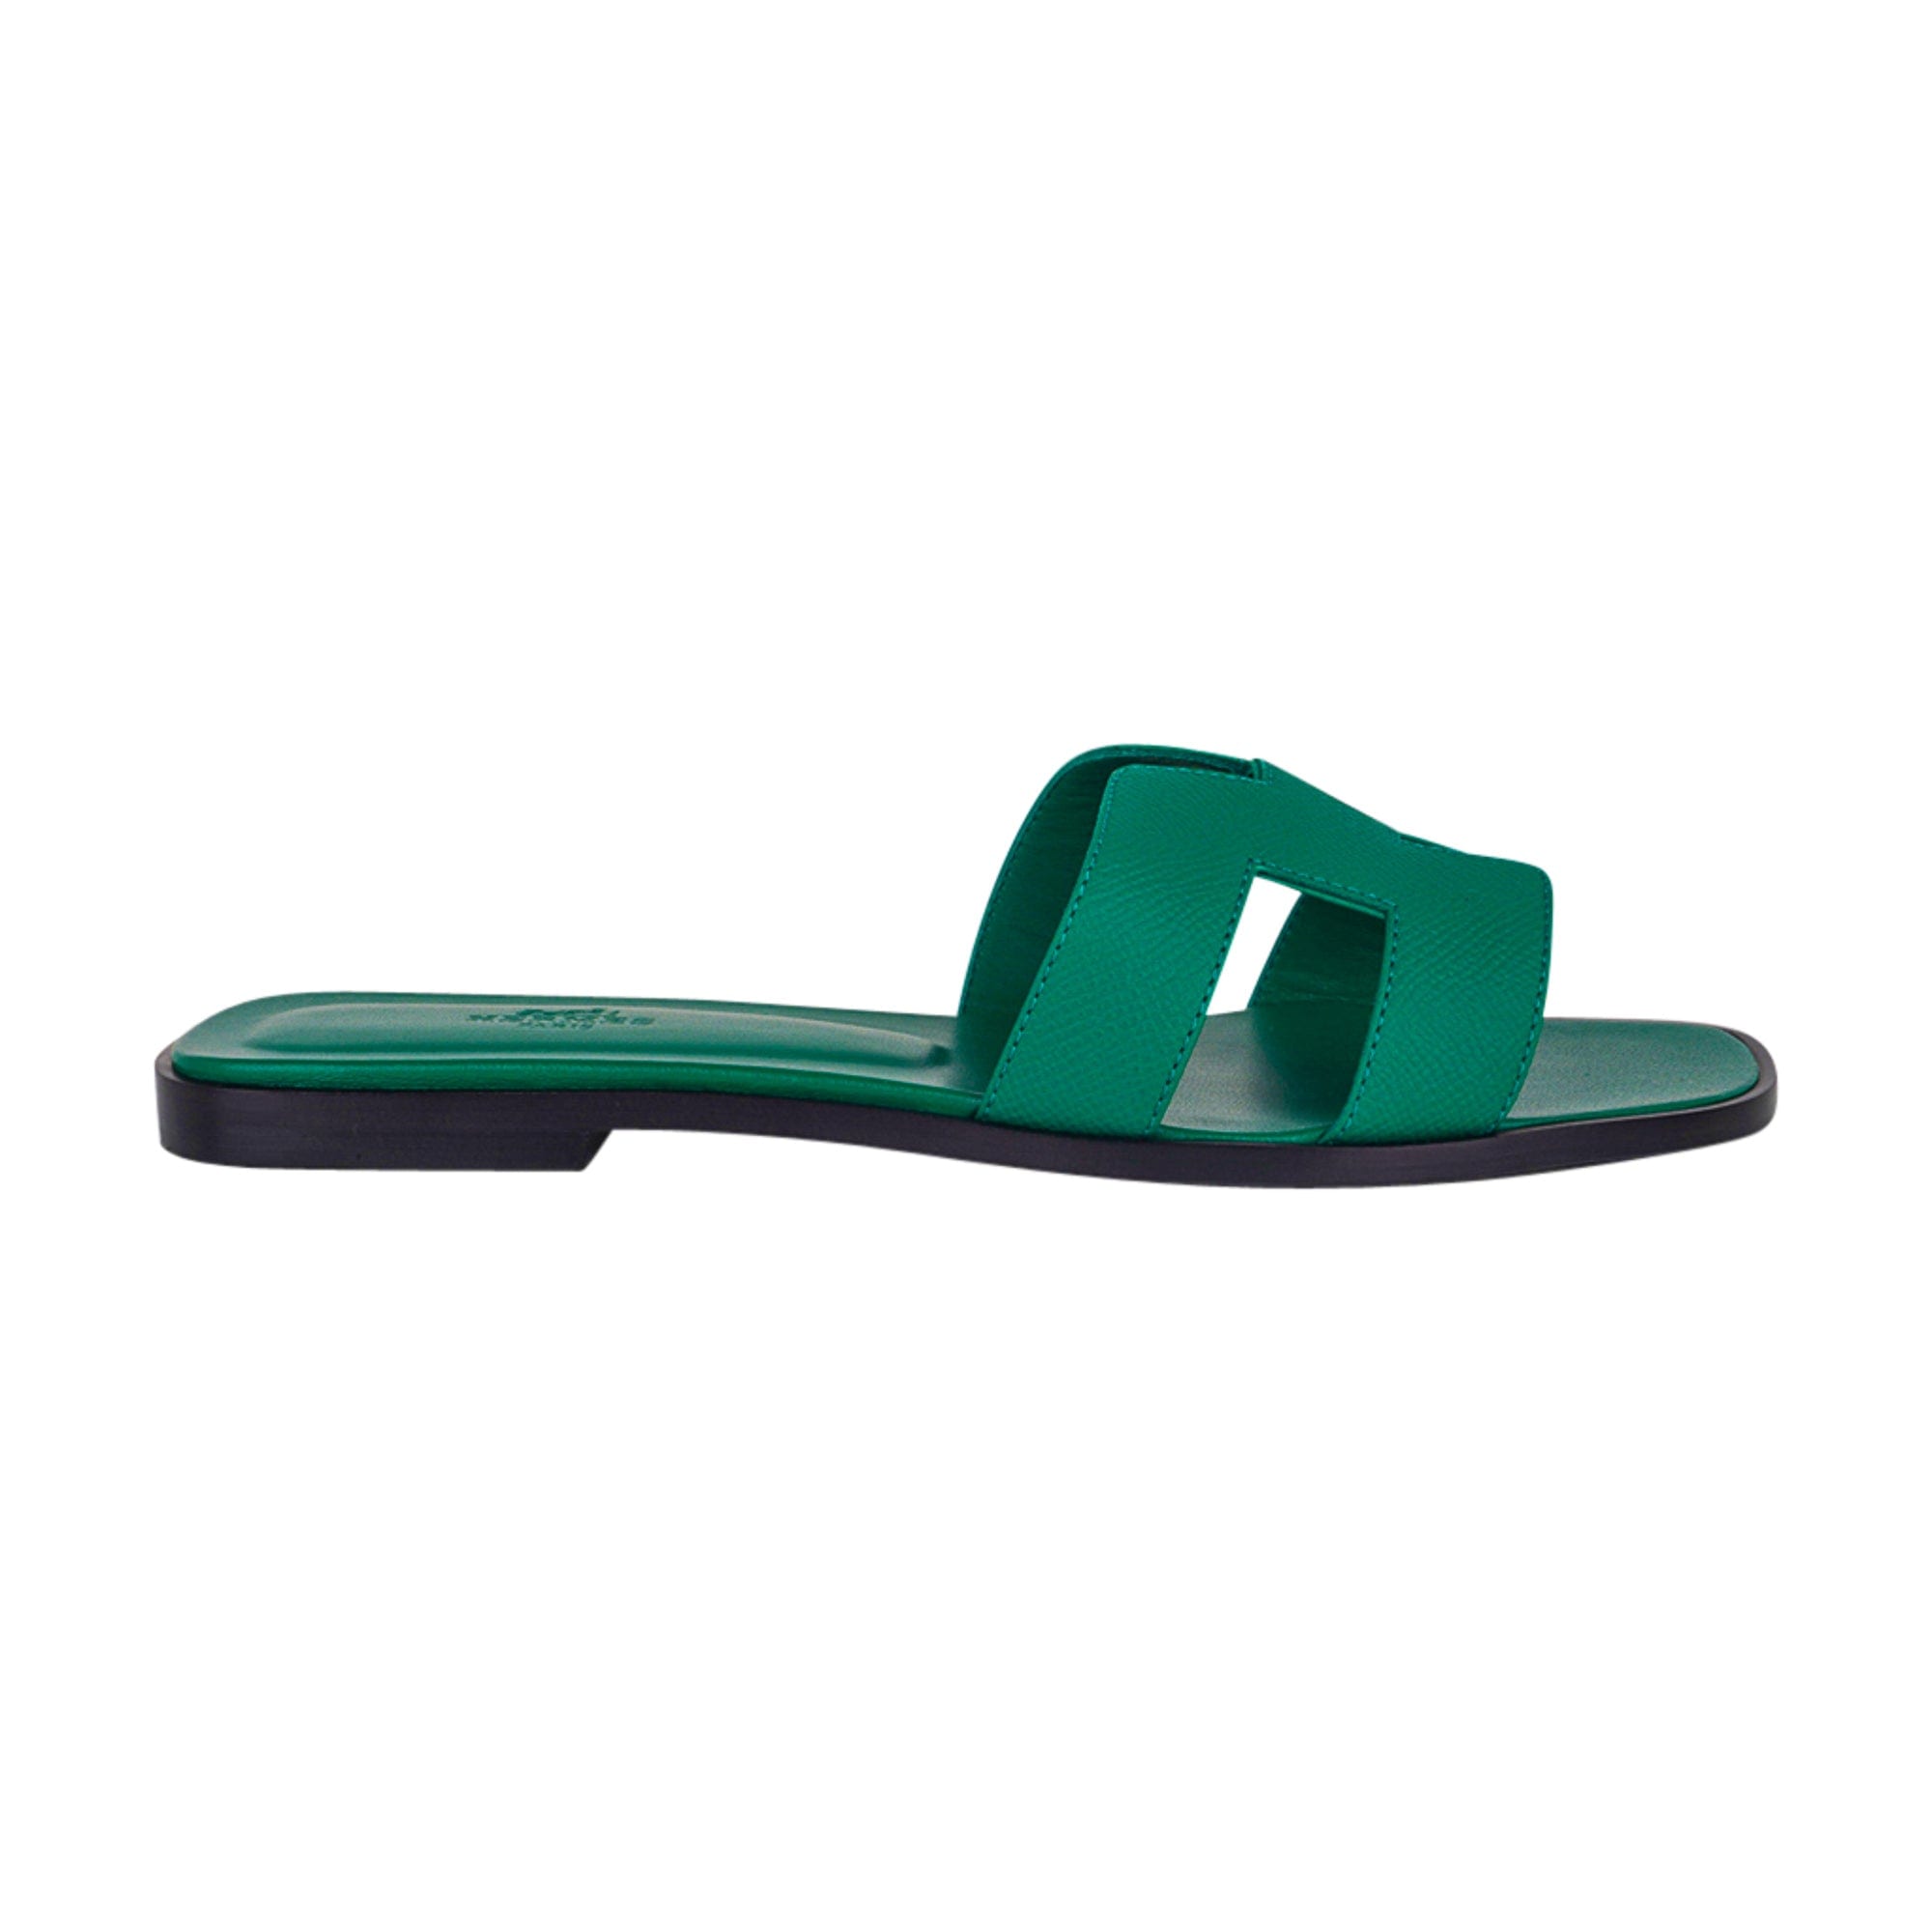 HERMES Oran Flat Sandals Vert Emeraude Lizard 36 *New - Timeless Luxuries